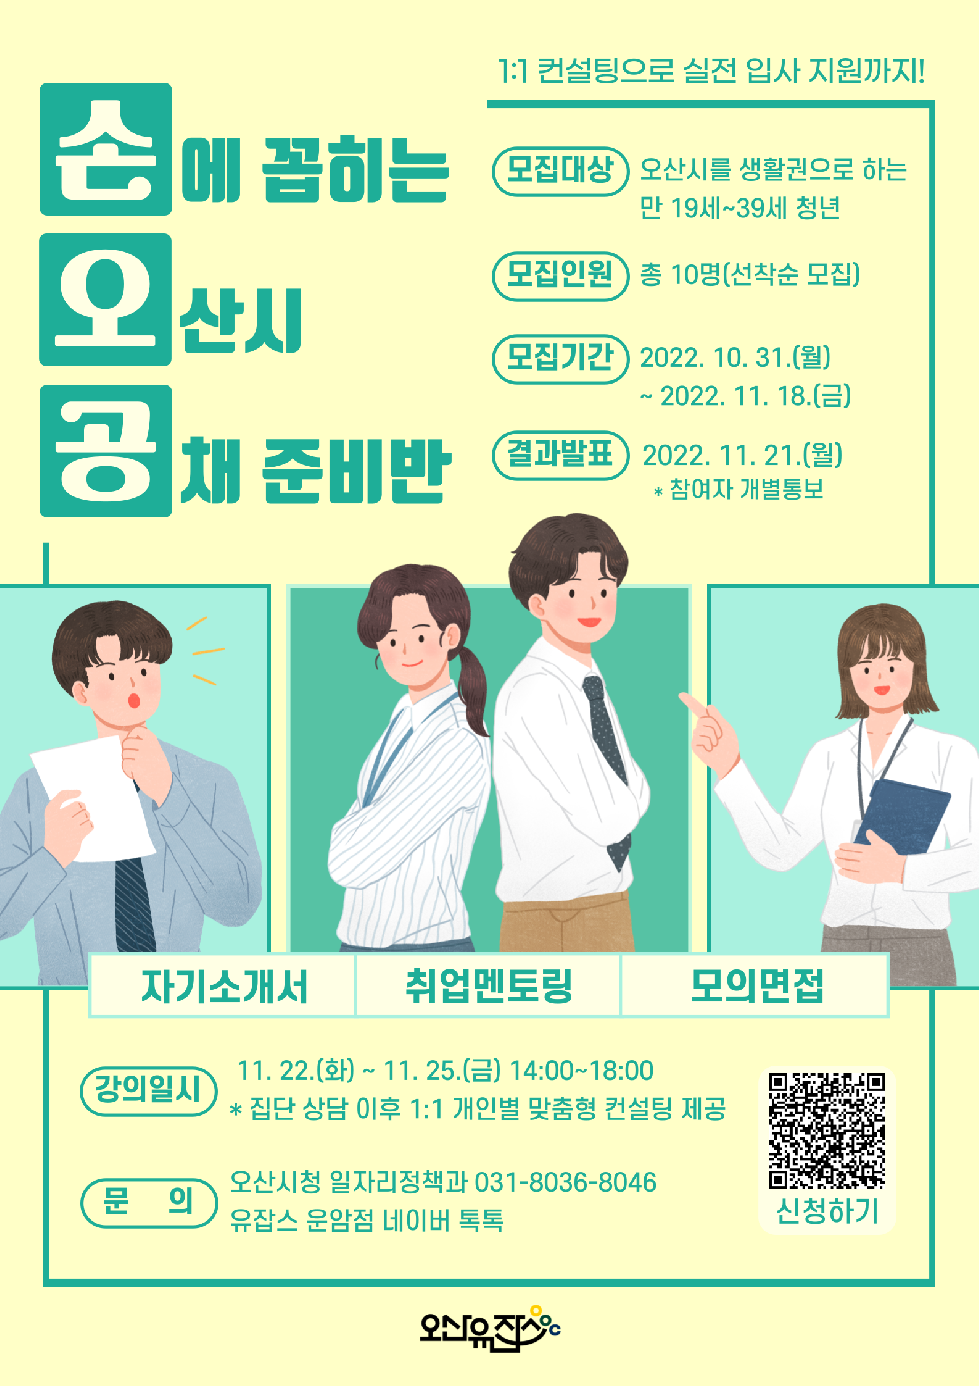 오산시 유잡스 대표 취업 프로그램“손오공 3기” 모집